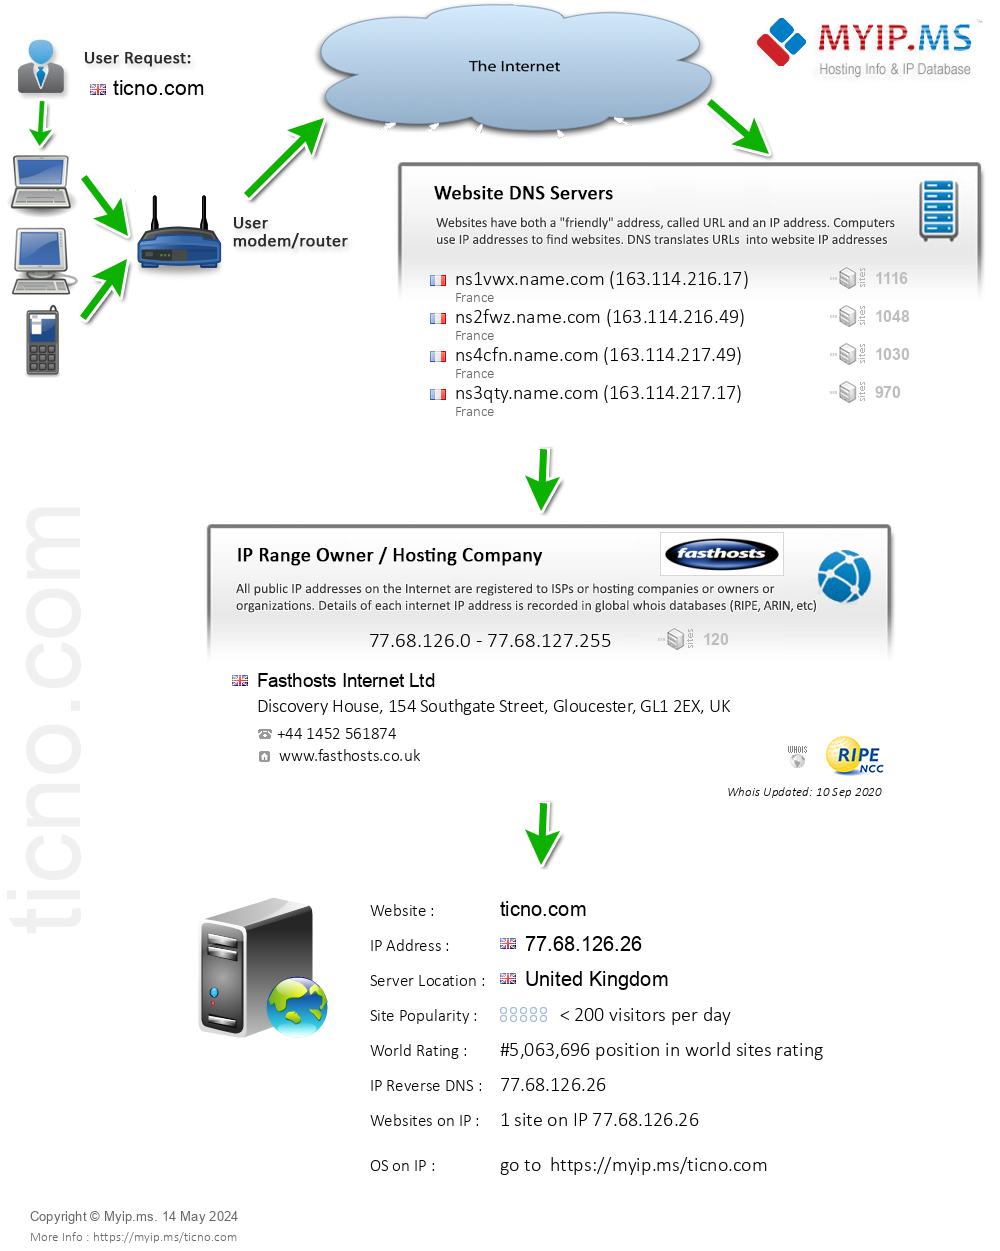 Ticno.com - Website Hosting Visual IP Diagram